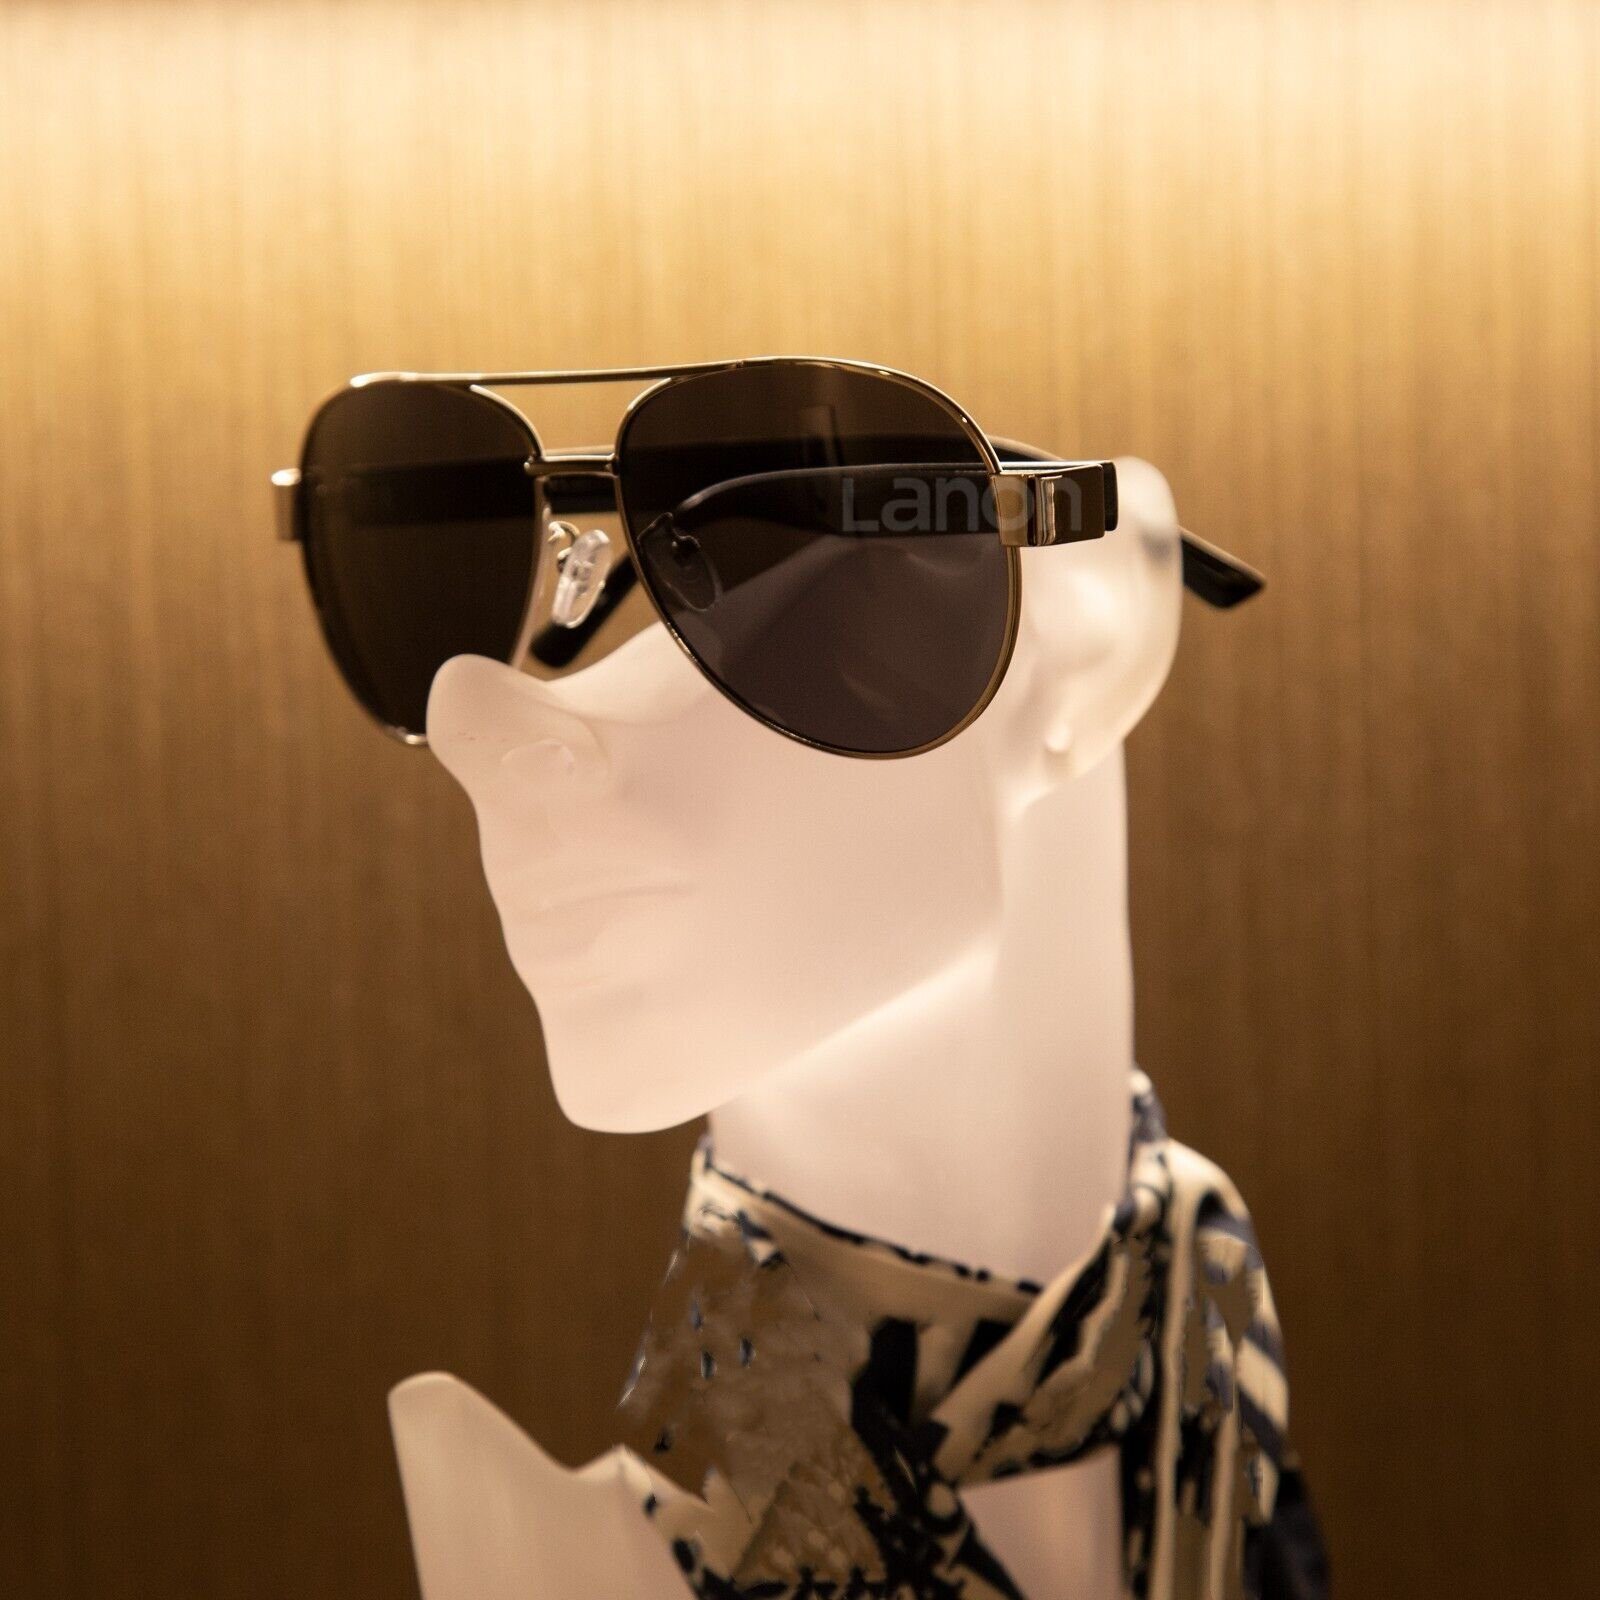 Lamon Sonnenbrille Herren Aluminium Magnesium Polarisiert Sonnenbrille Sportarten UV400 schwarzer Rahmen, graue Linse | Sonnenbrillen